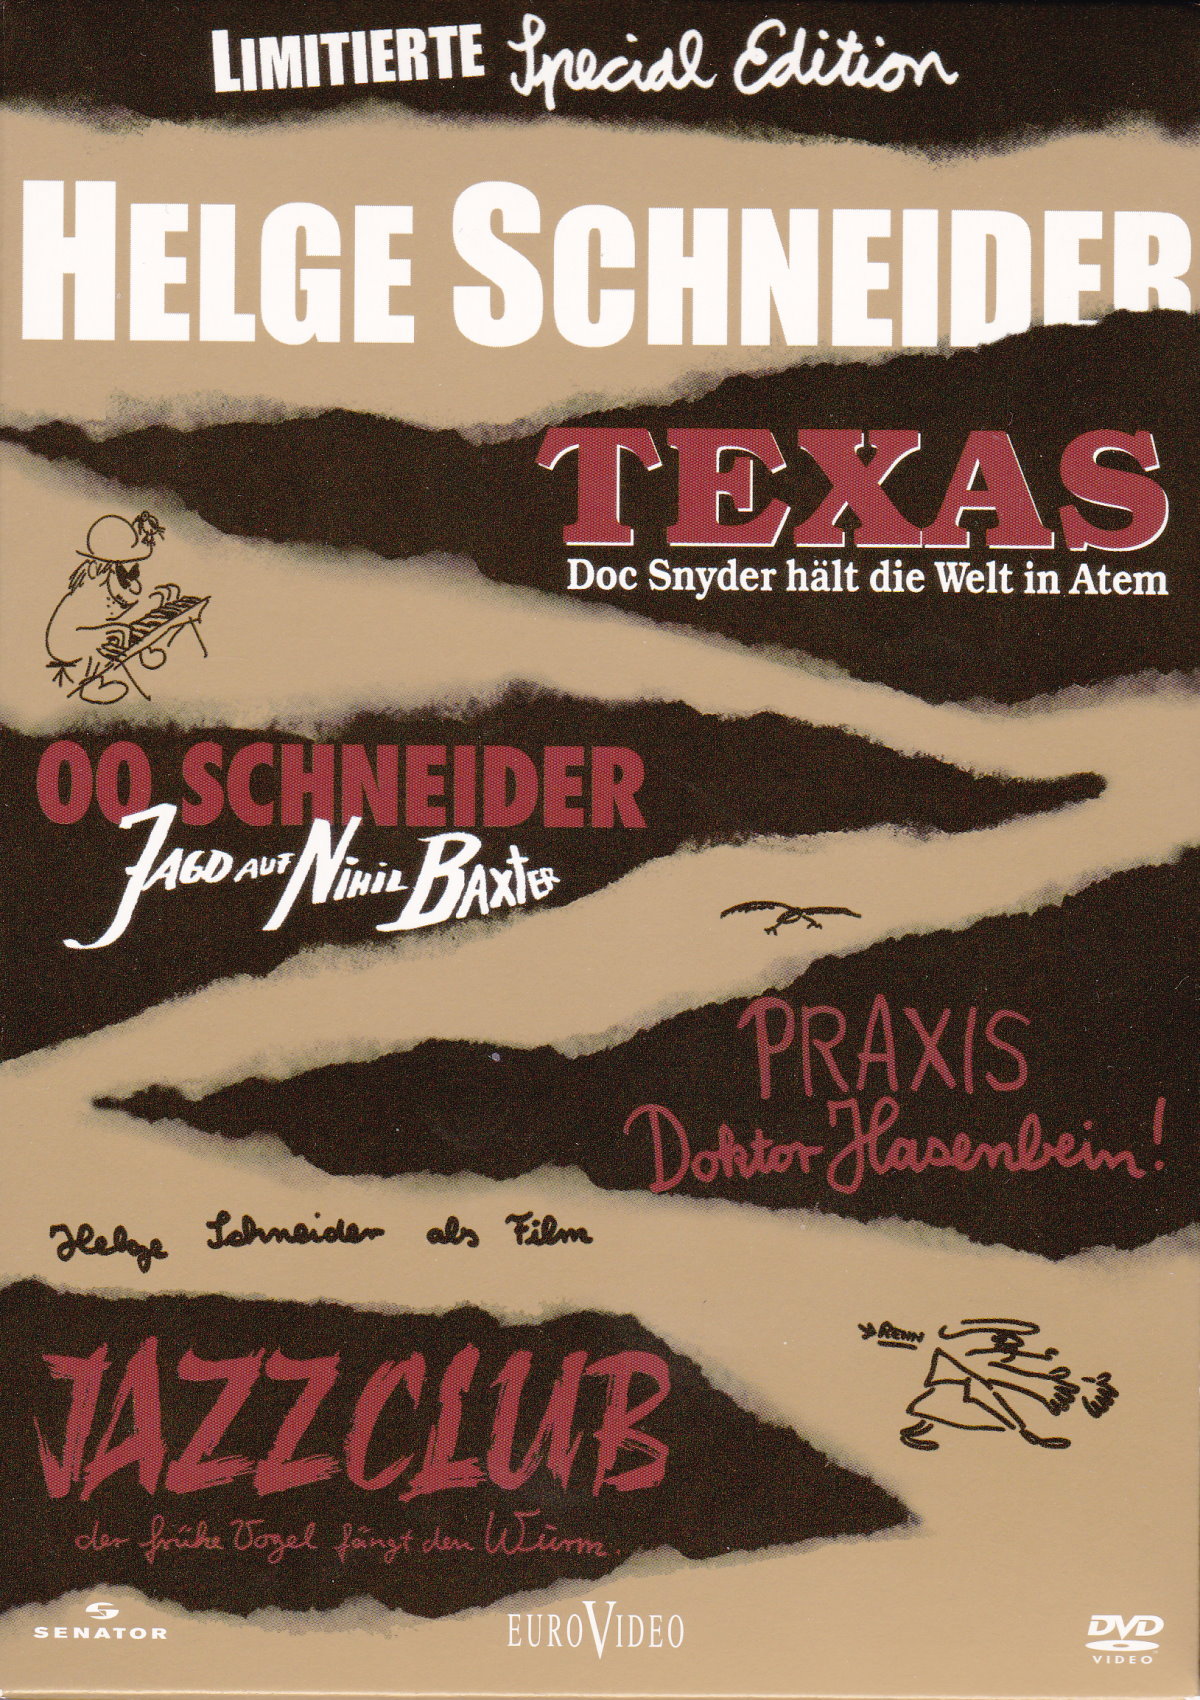 Cover - 00 Schneider - Jagd auf Nihil Baxter.jpg